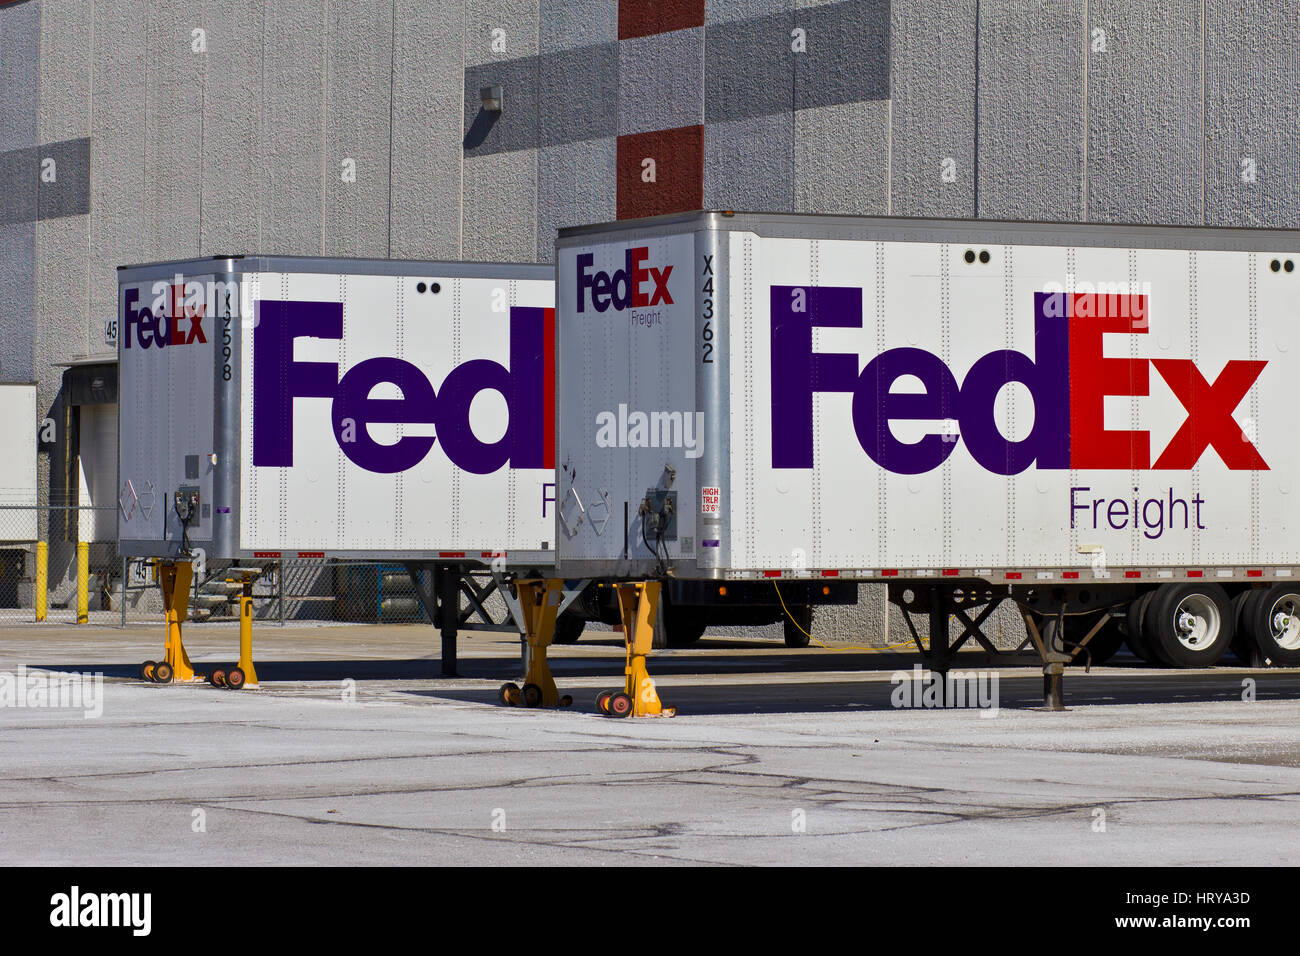 Indianapolis - Circa Février 2016 : Federal Express camions dans les quais de chargement. FedEx est une société de services de livraison de courrier mondial VI Banque D'Images